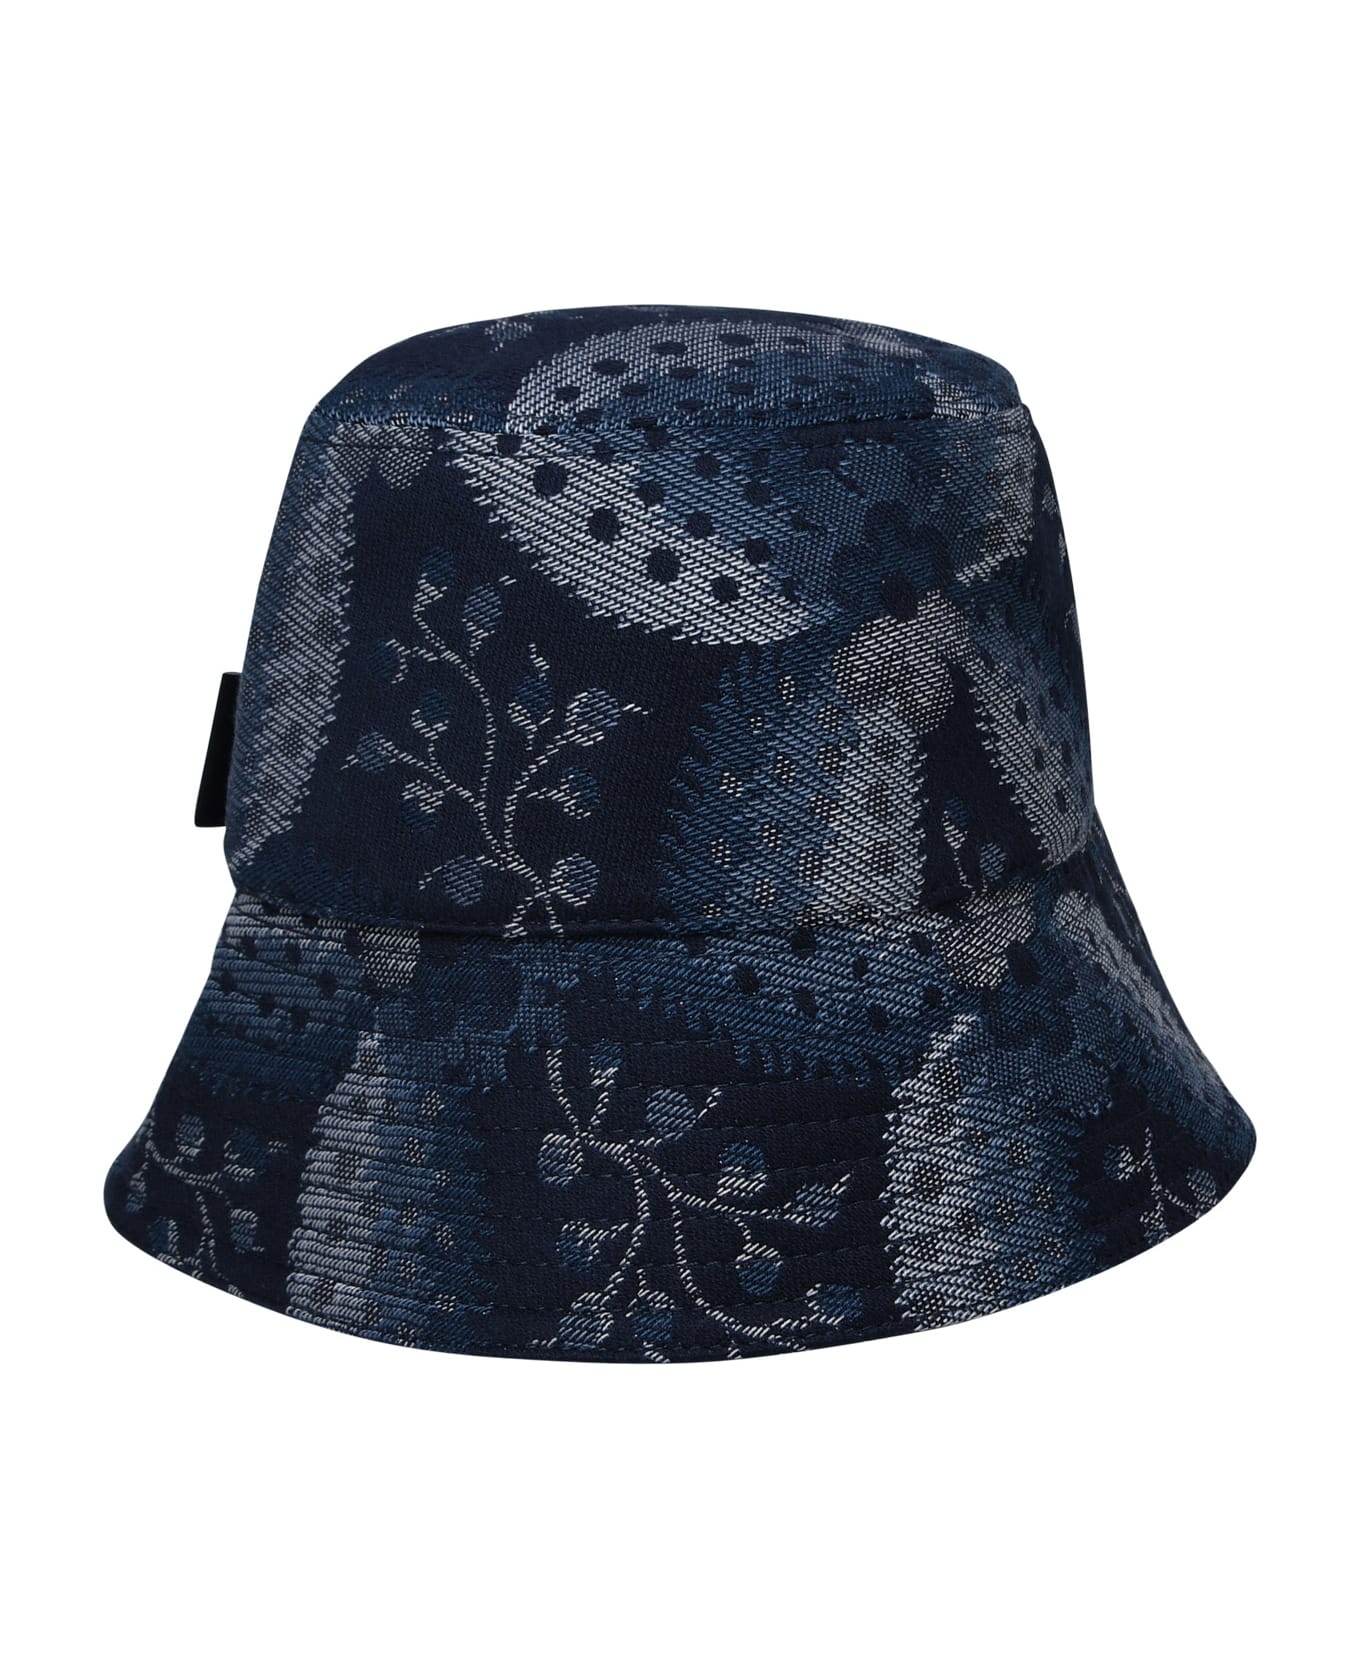 Etro Blue Cotton Blend Hat - Blue 帽子